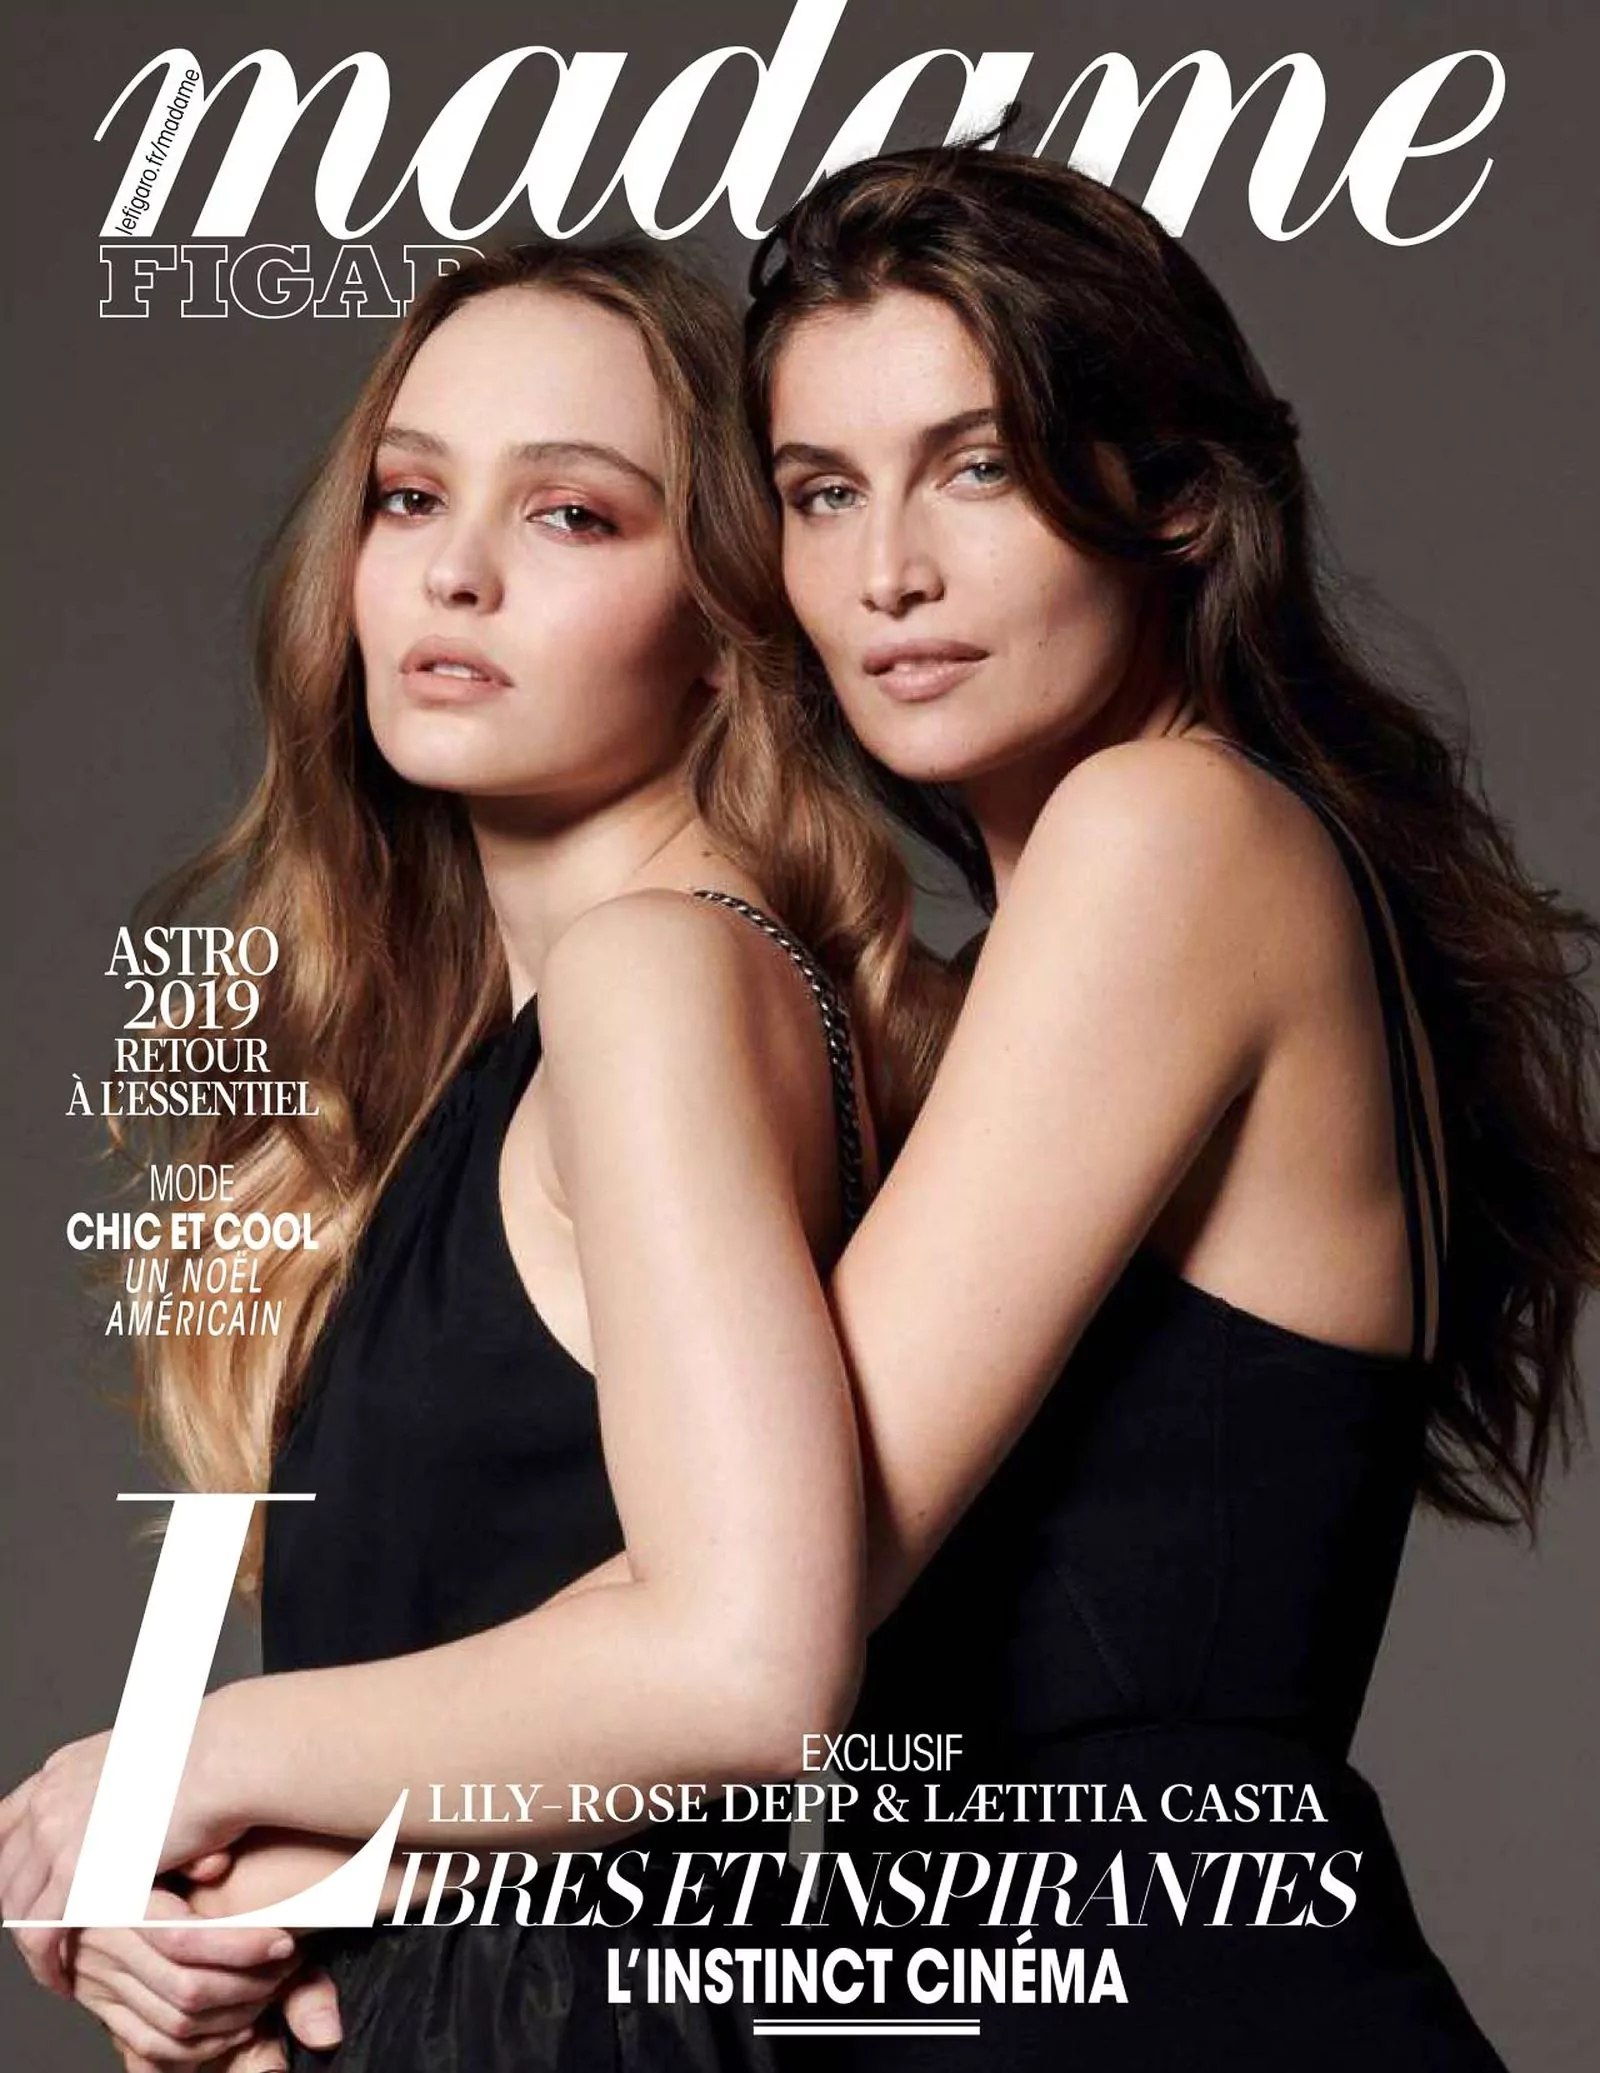 Лили-Роуз Депп и Летиция Каста на обложке журнала Madame Figaro, 2018 г.